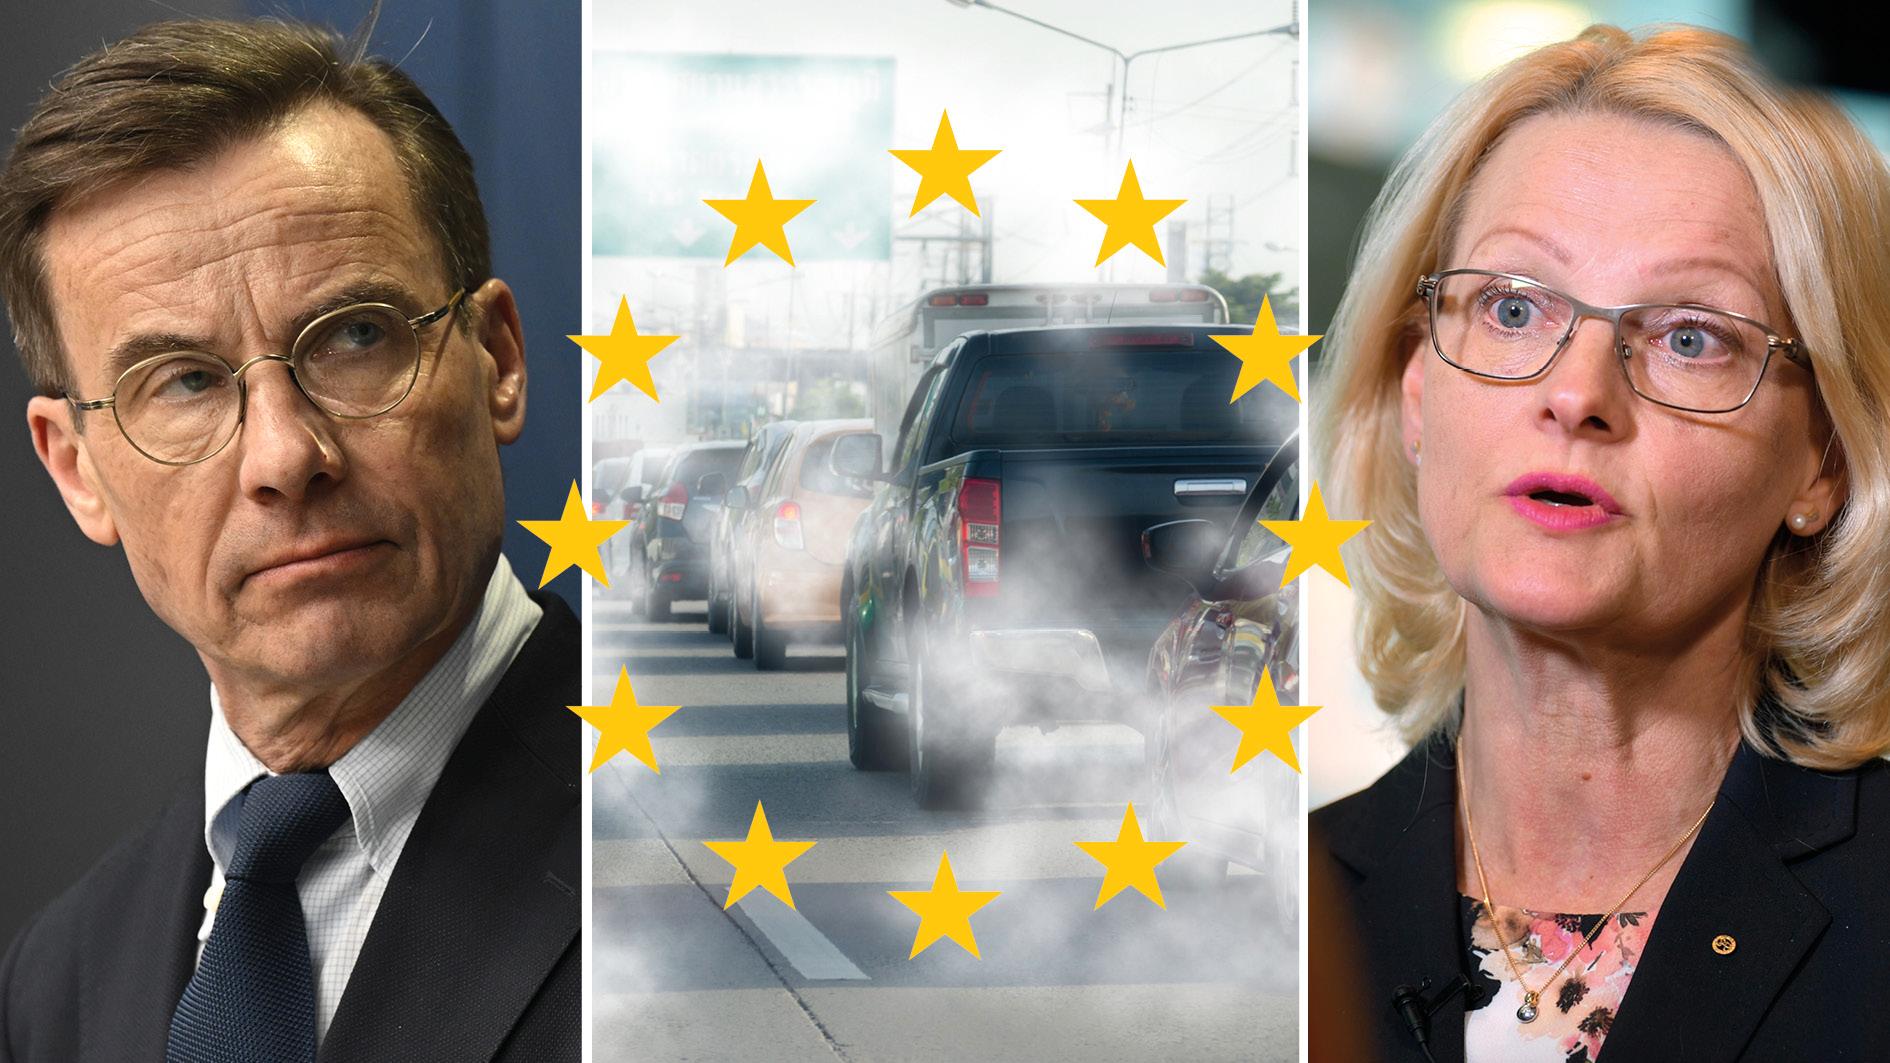 EU:s klimatpaket är i gungning efter att Tyskland blockerat ett stopp av fossildrivna bilar. Jag kräver att den svenska regeringen tar sitt ansvar för att få Tyskland med på banan igen. Eller är det SD som håller i taktpinnen? skriver Heléne Fritzon.